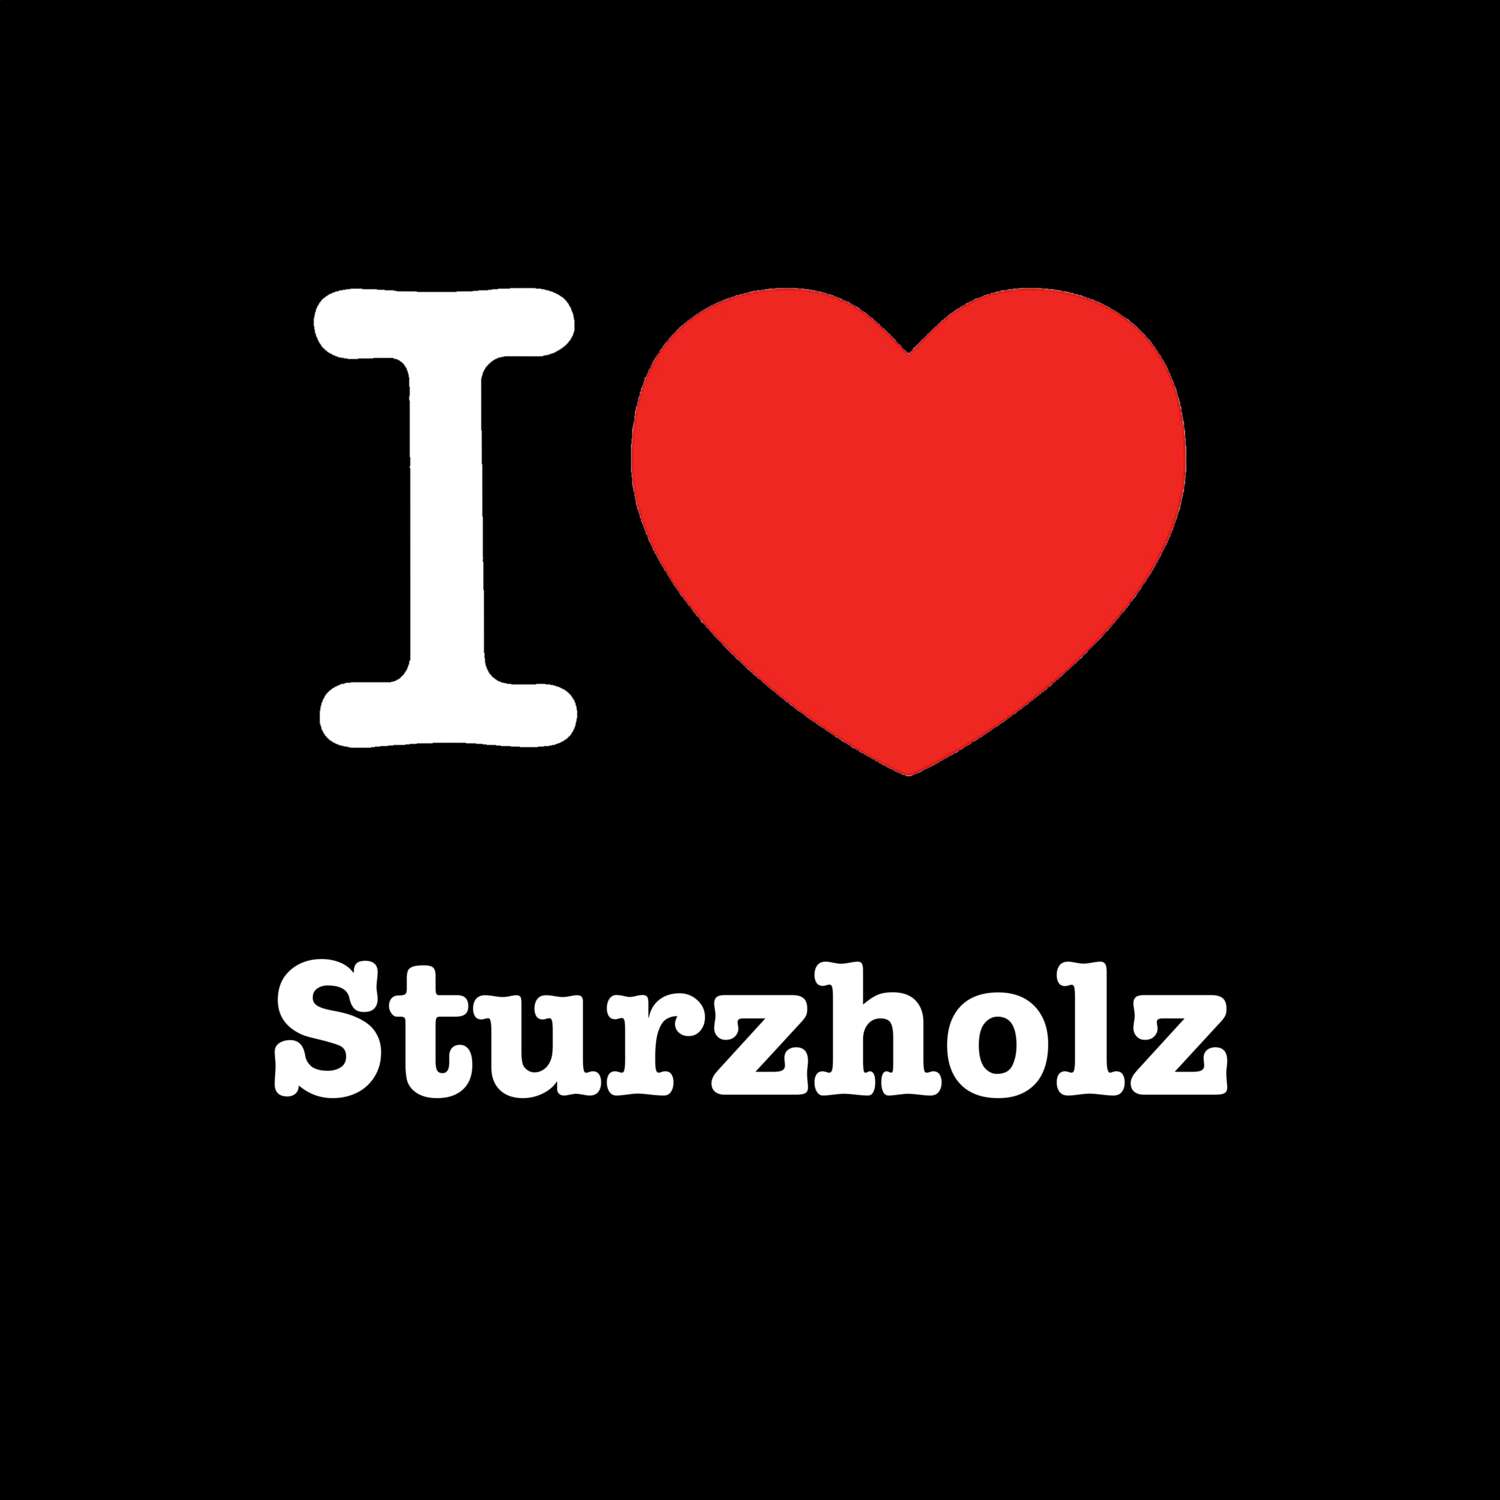 Sturzholz T-Shirt »I love«